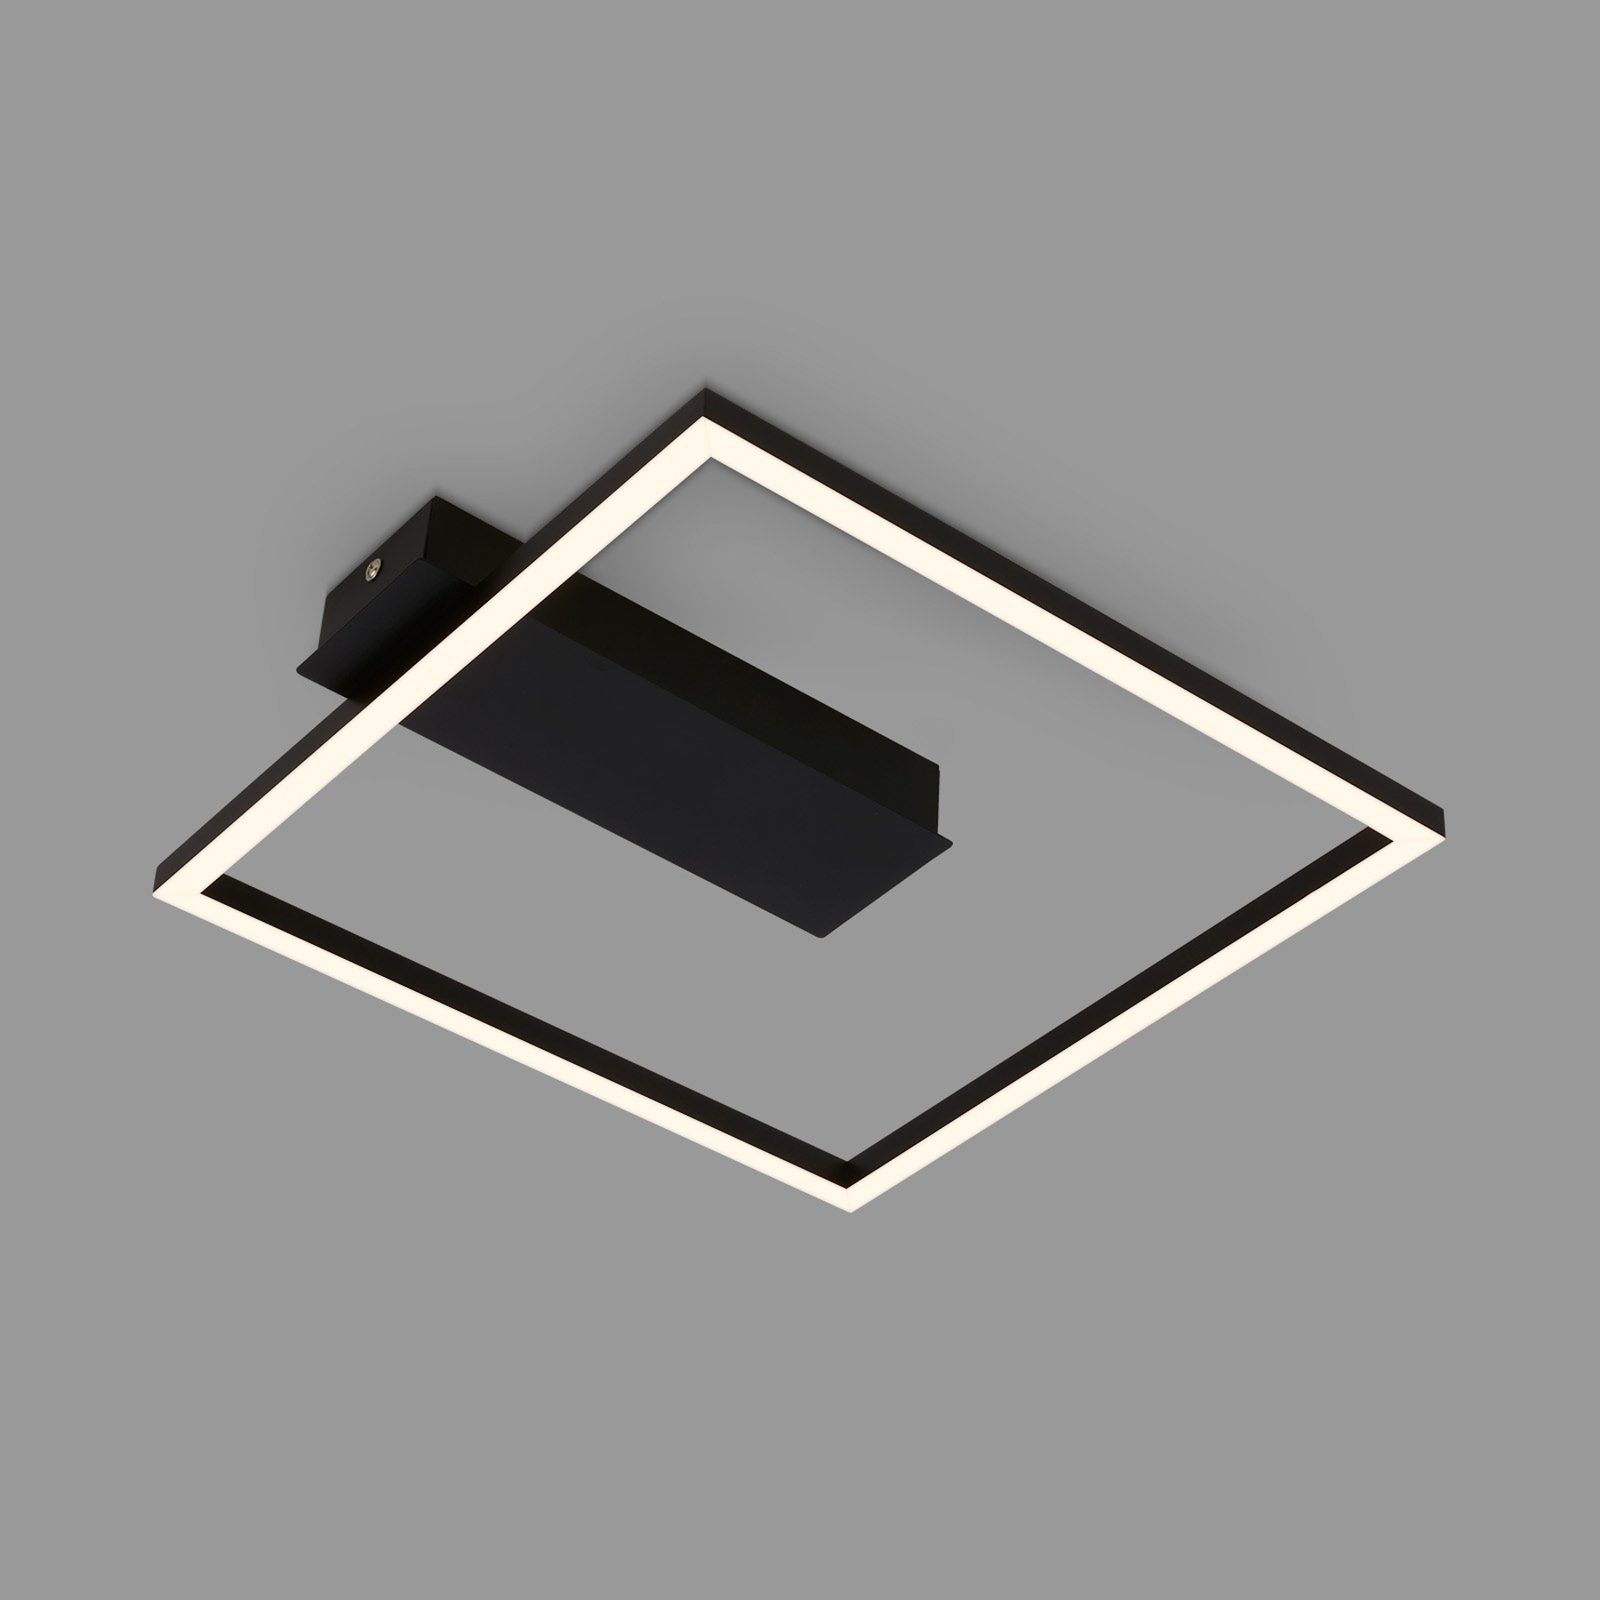 LED-Deckenleuchte 3771 in Rahmenform, schwarz